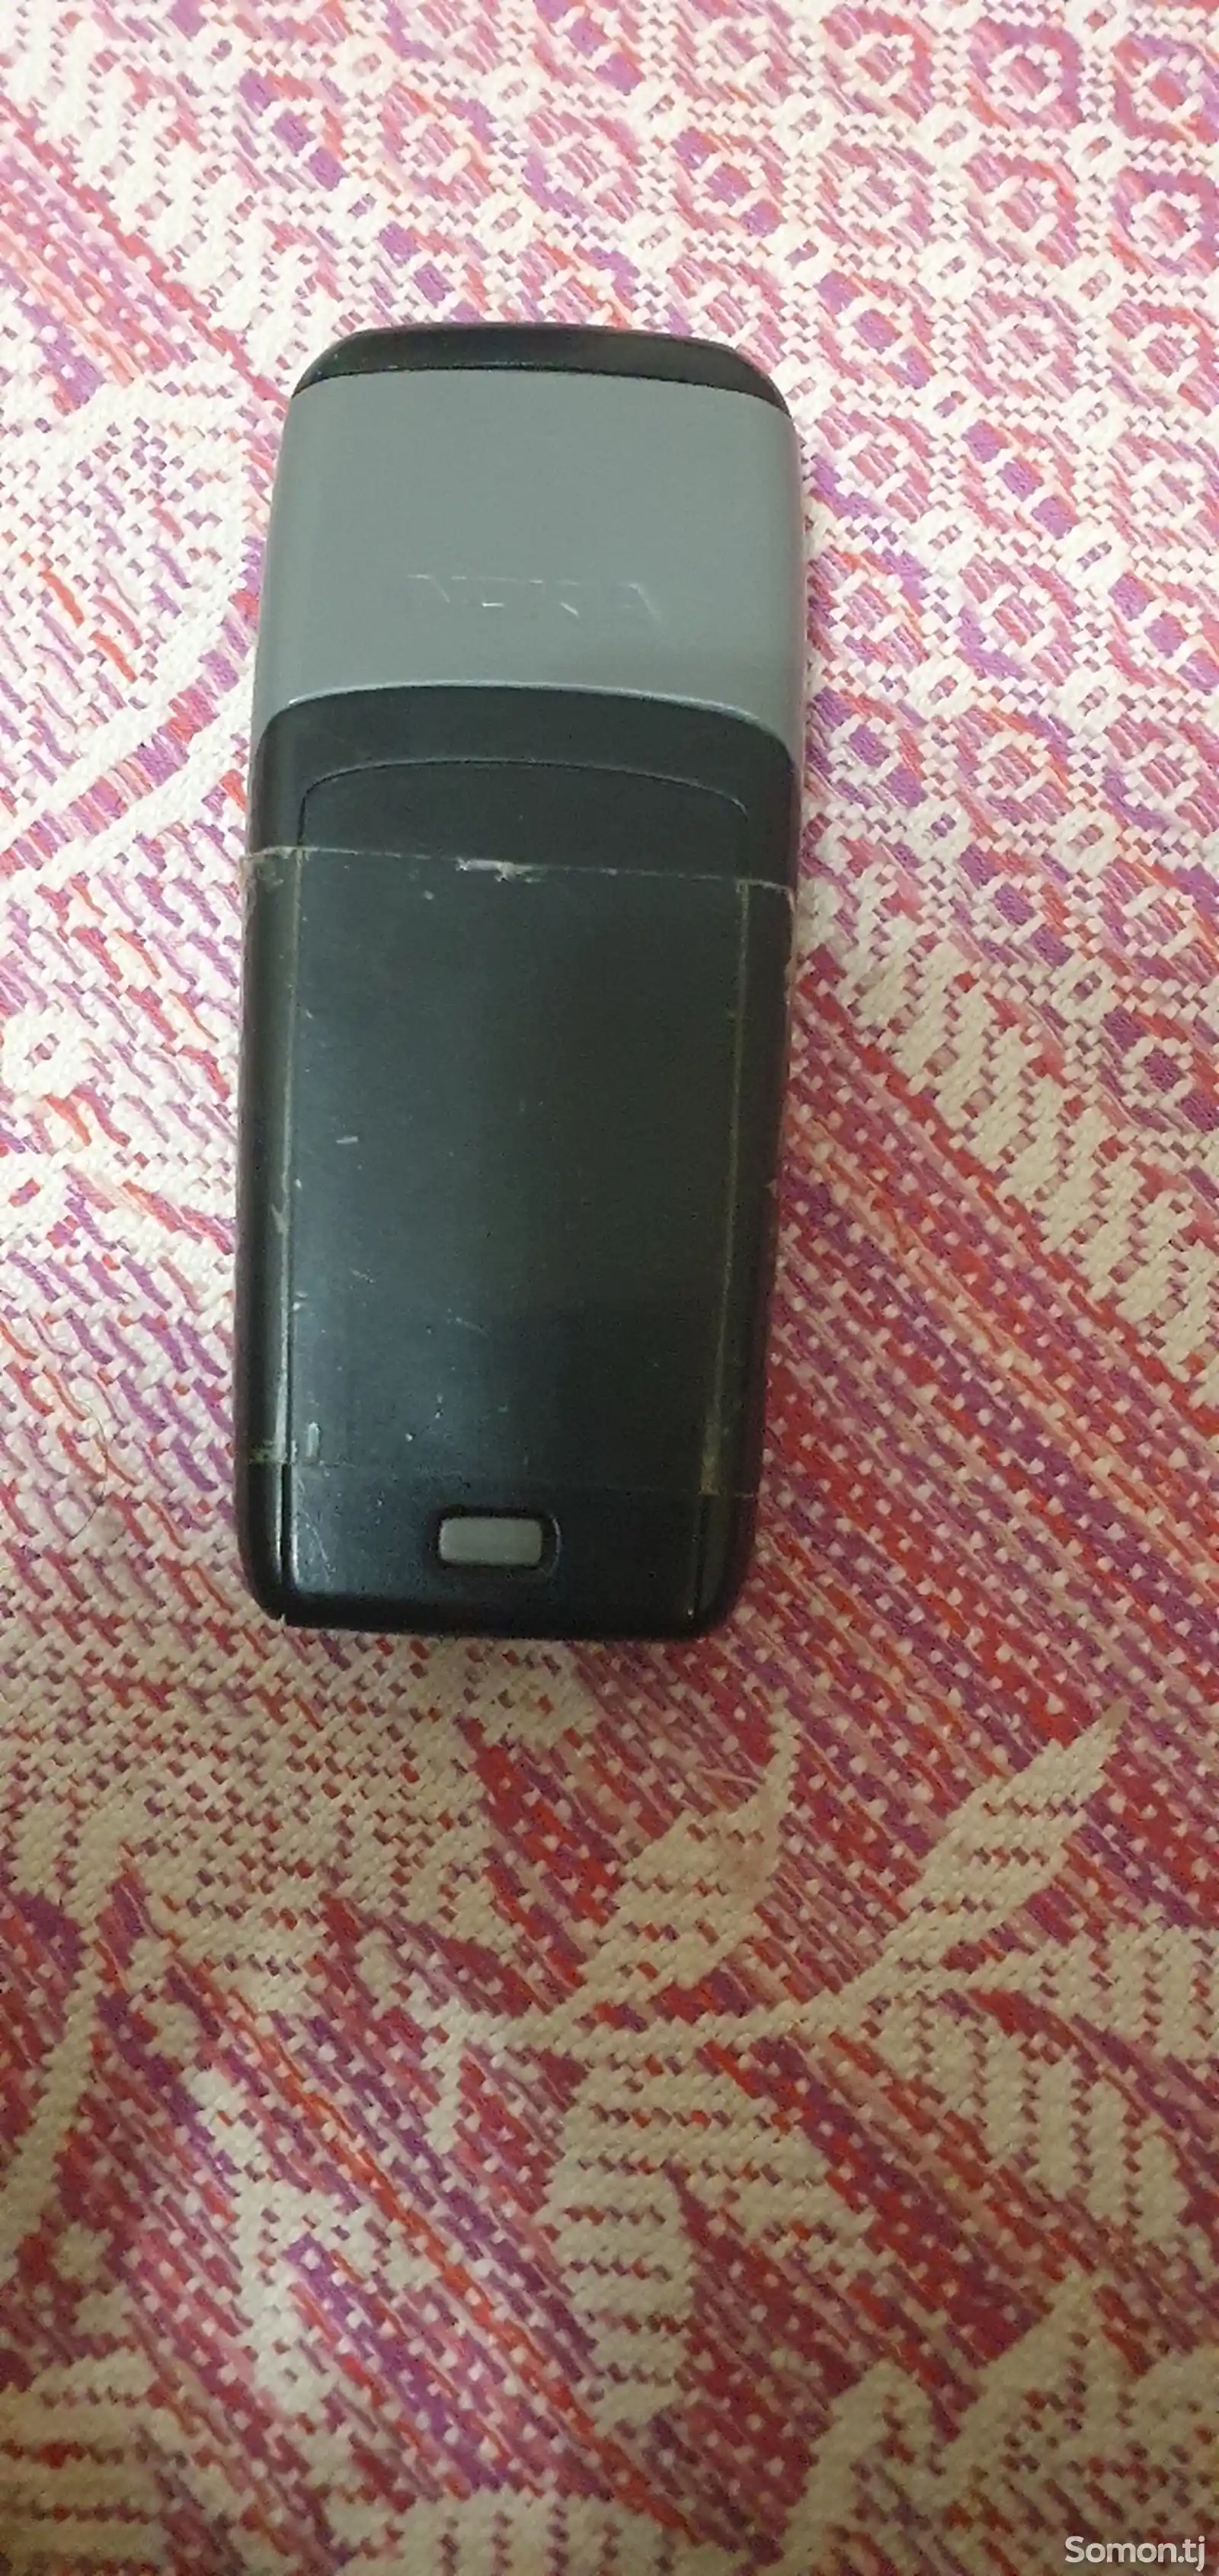 Nokia 1600-3